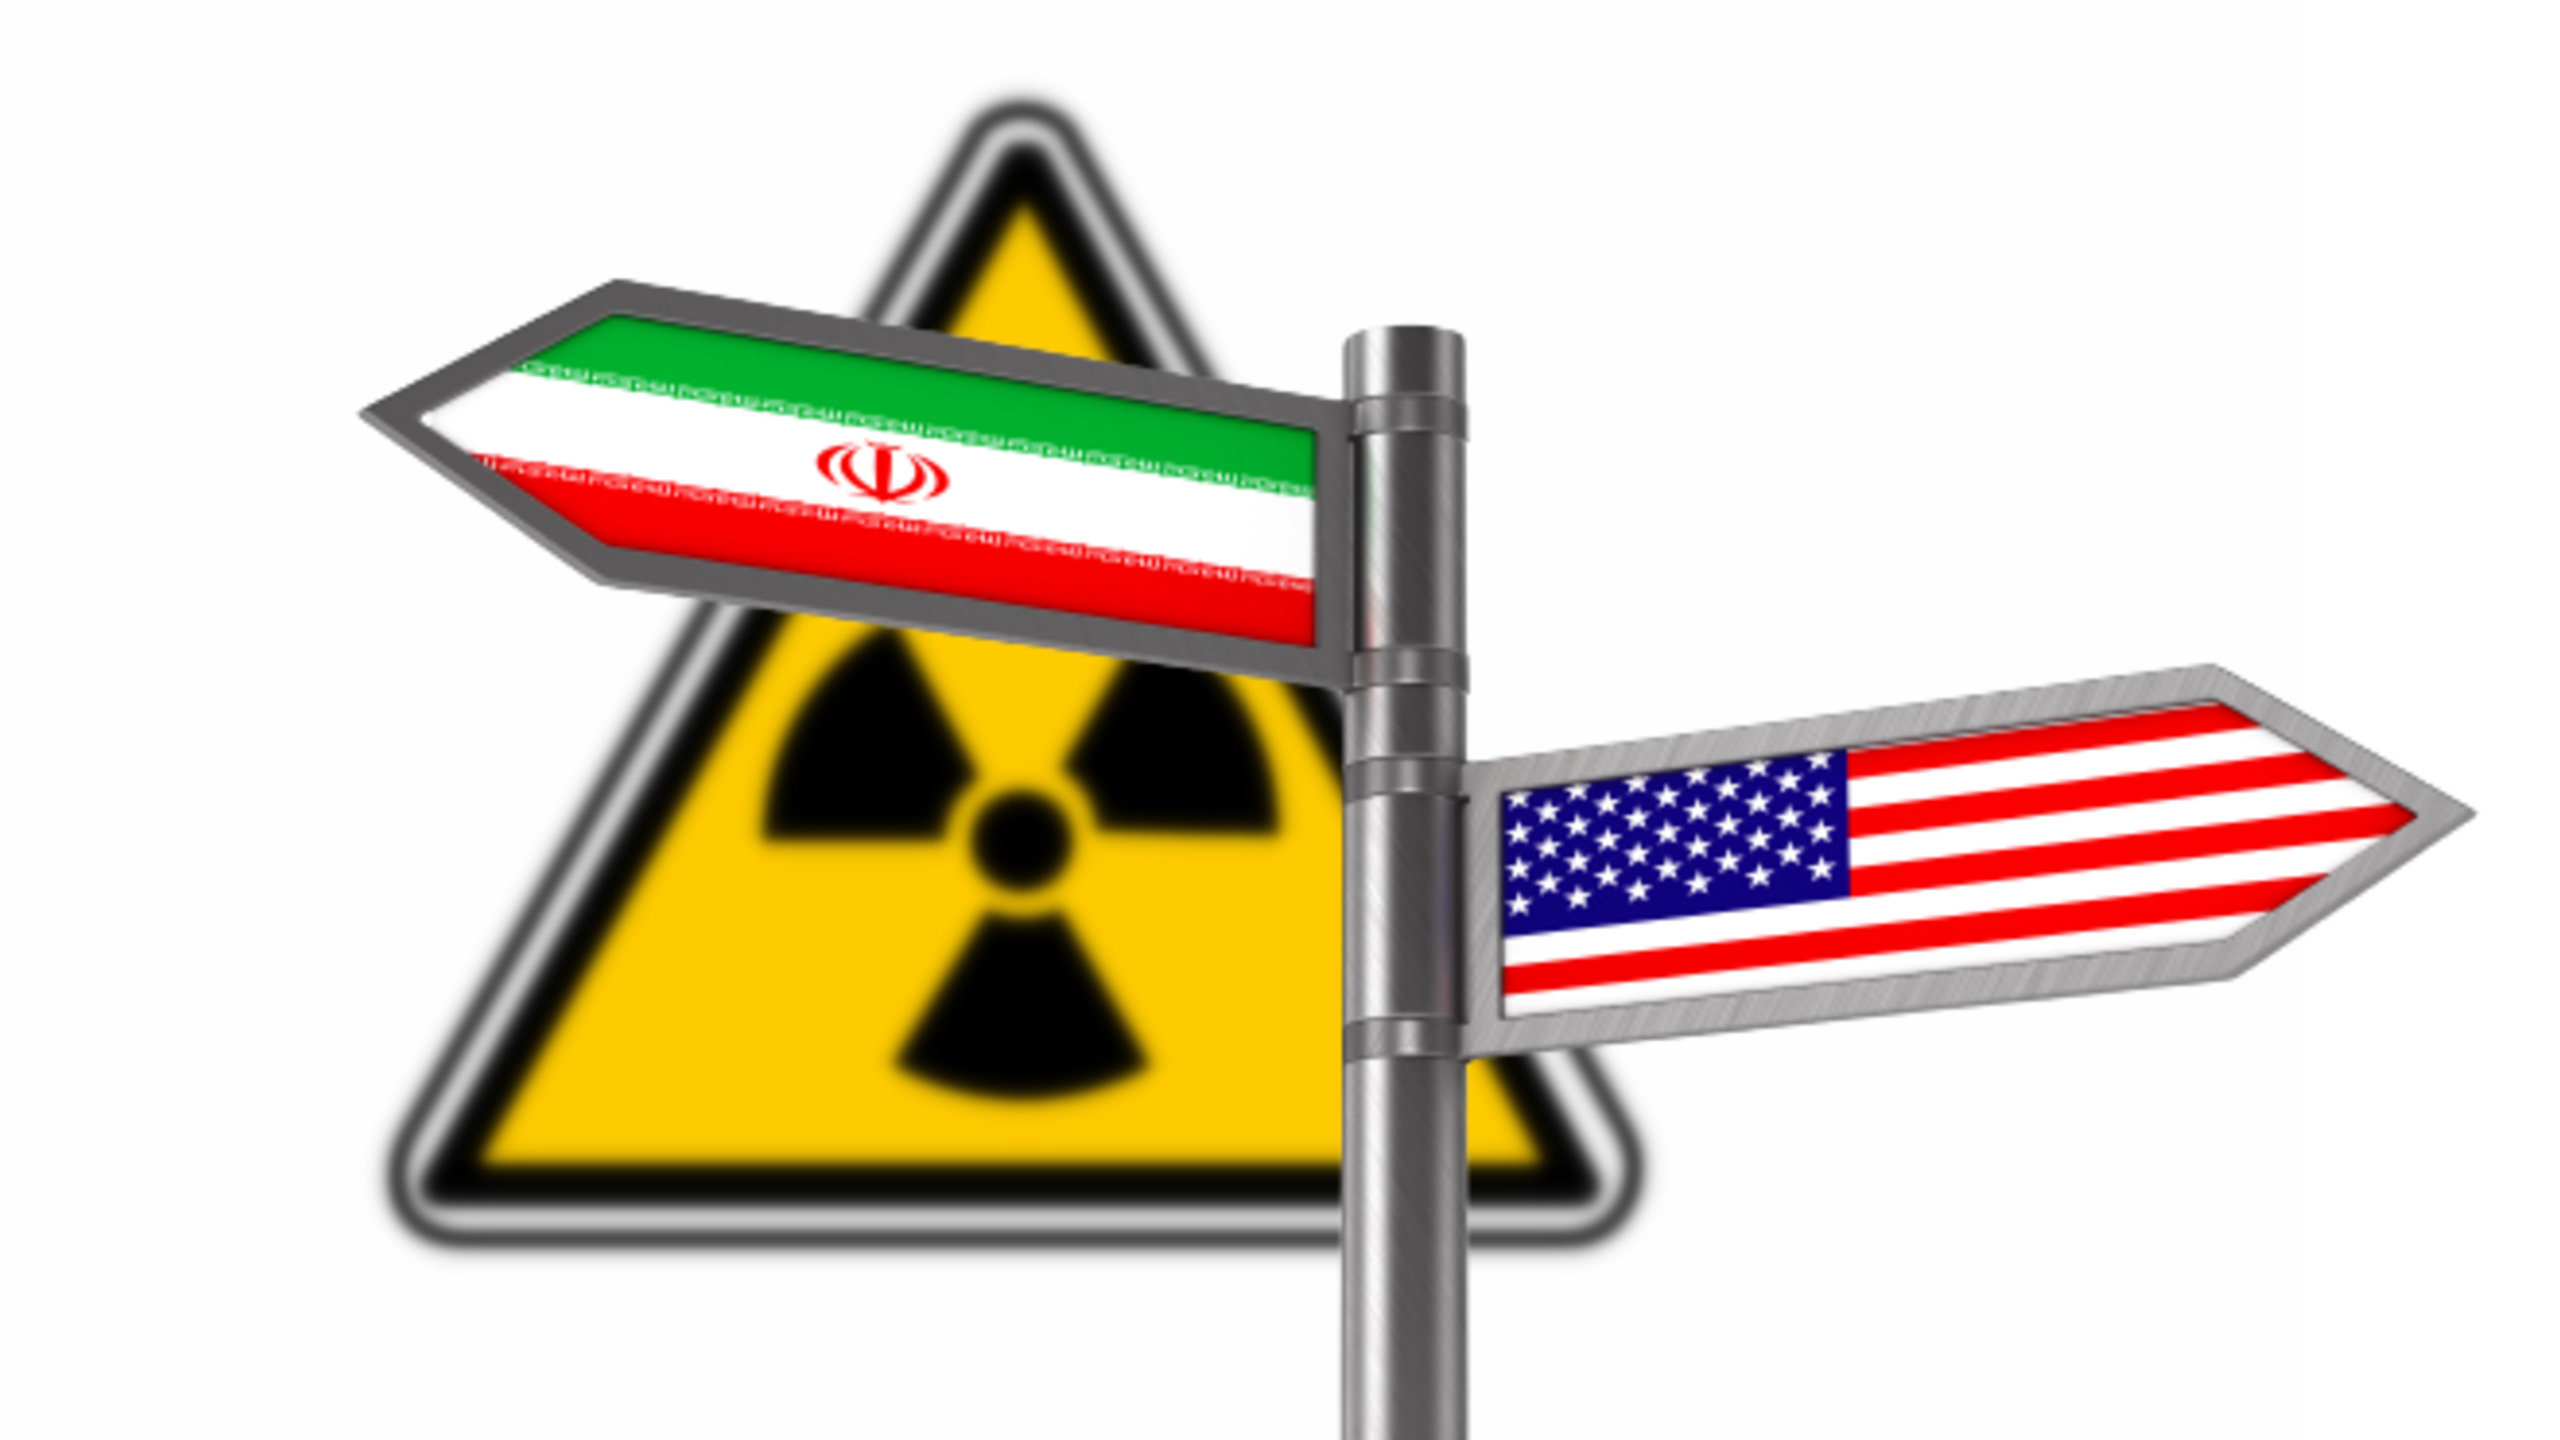 Iran: We Await US Response To Address ‘Concerns’ in Vienna Talks